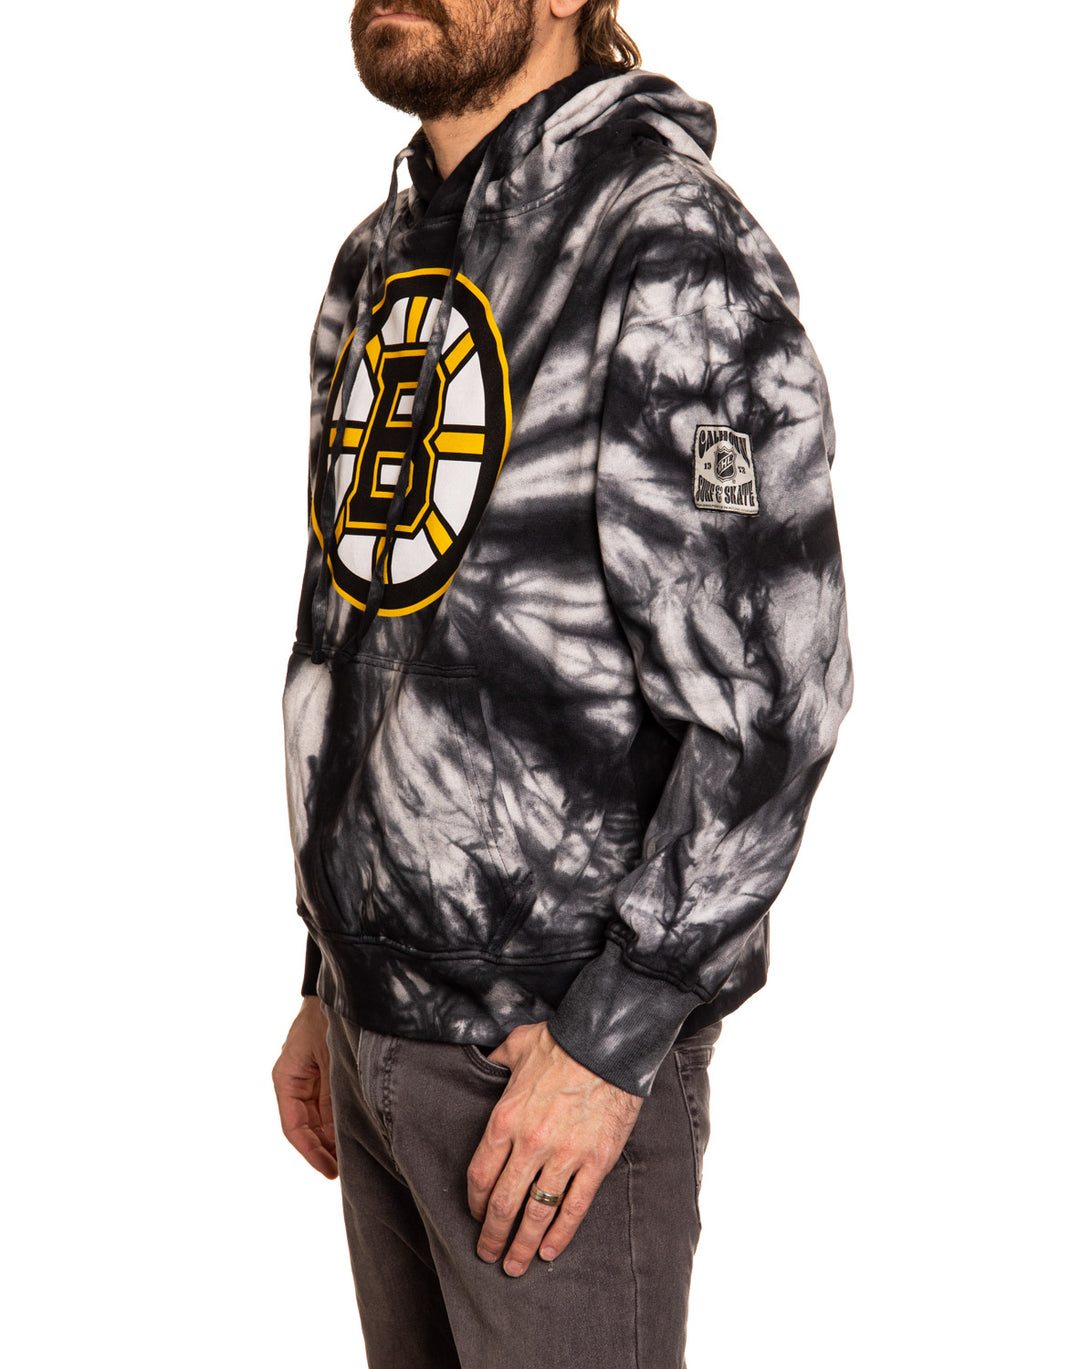 Official NHL licensed Boston Bruins Spiral Tie Dye hoodie